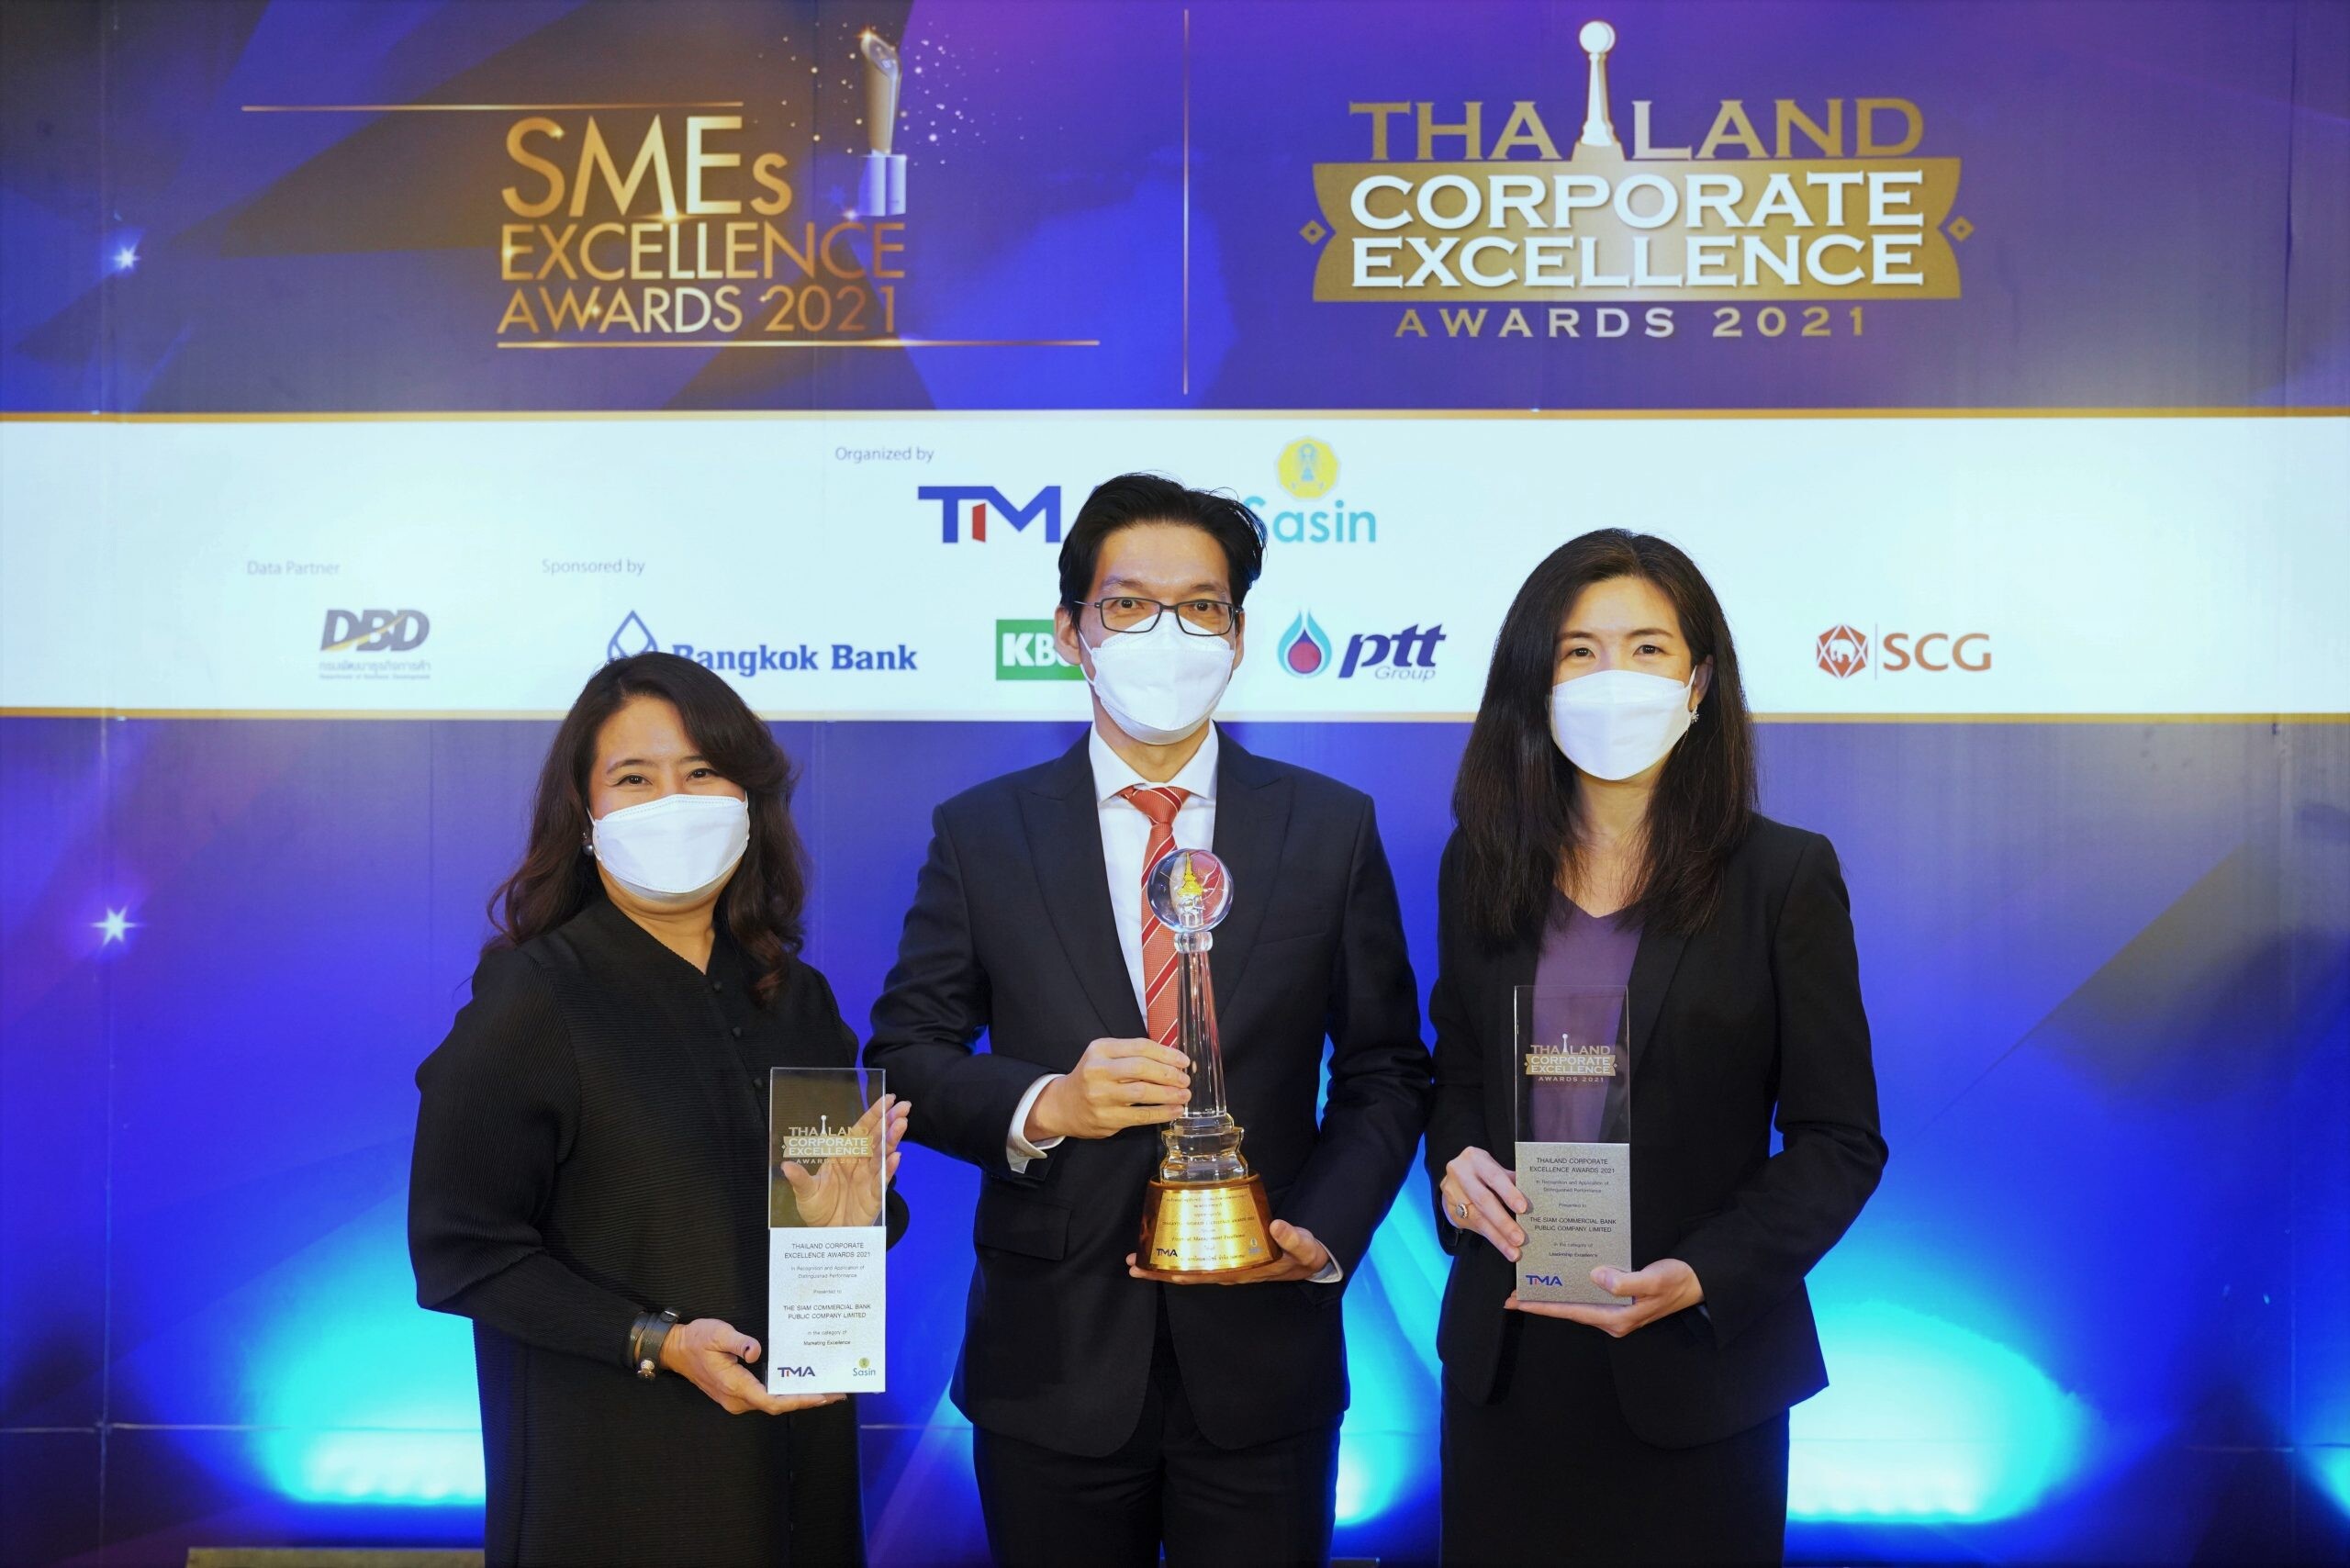 ไทยพาณิชย์ คว้า 3 รางวัล จากเวที Thailand Corporate Excellence Award 2021 ตอกย้ำความเป็นเลิศในการบริหารจัดการองค์กรอย่างแข็งแกร่งและมั่นคง